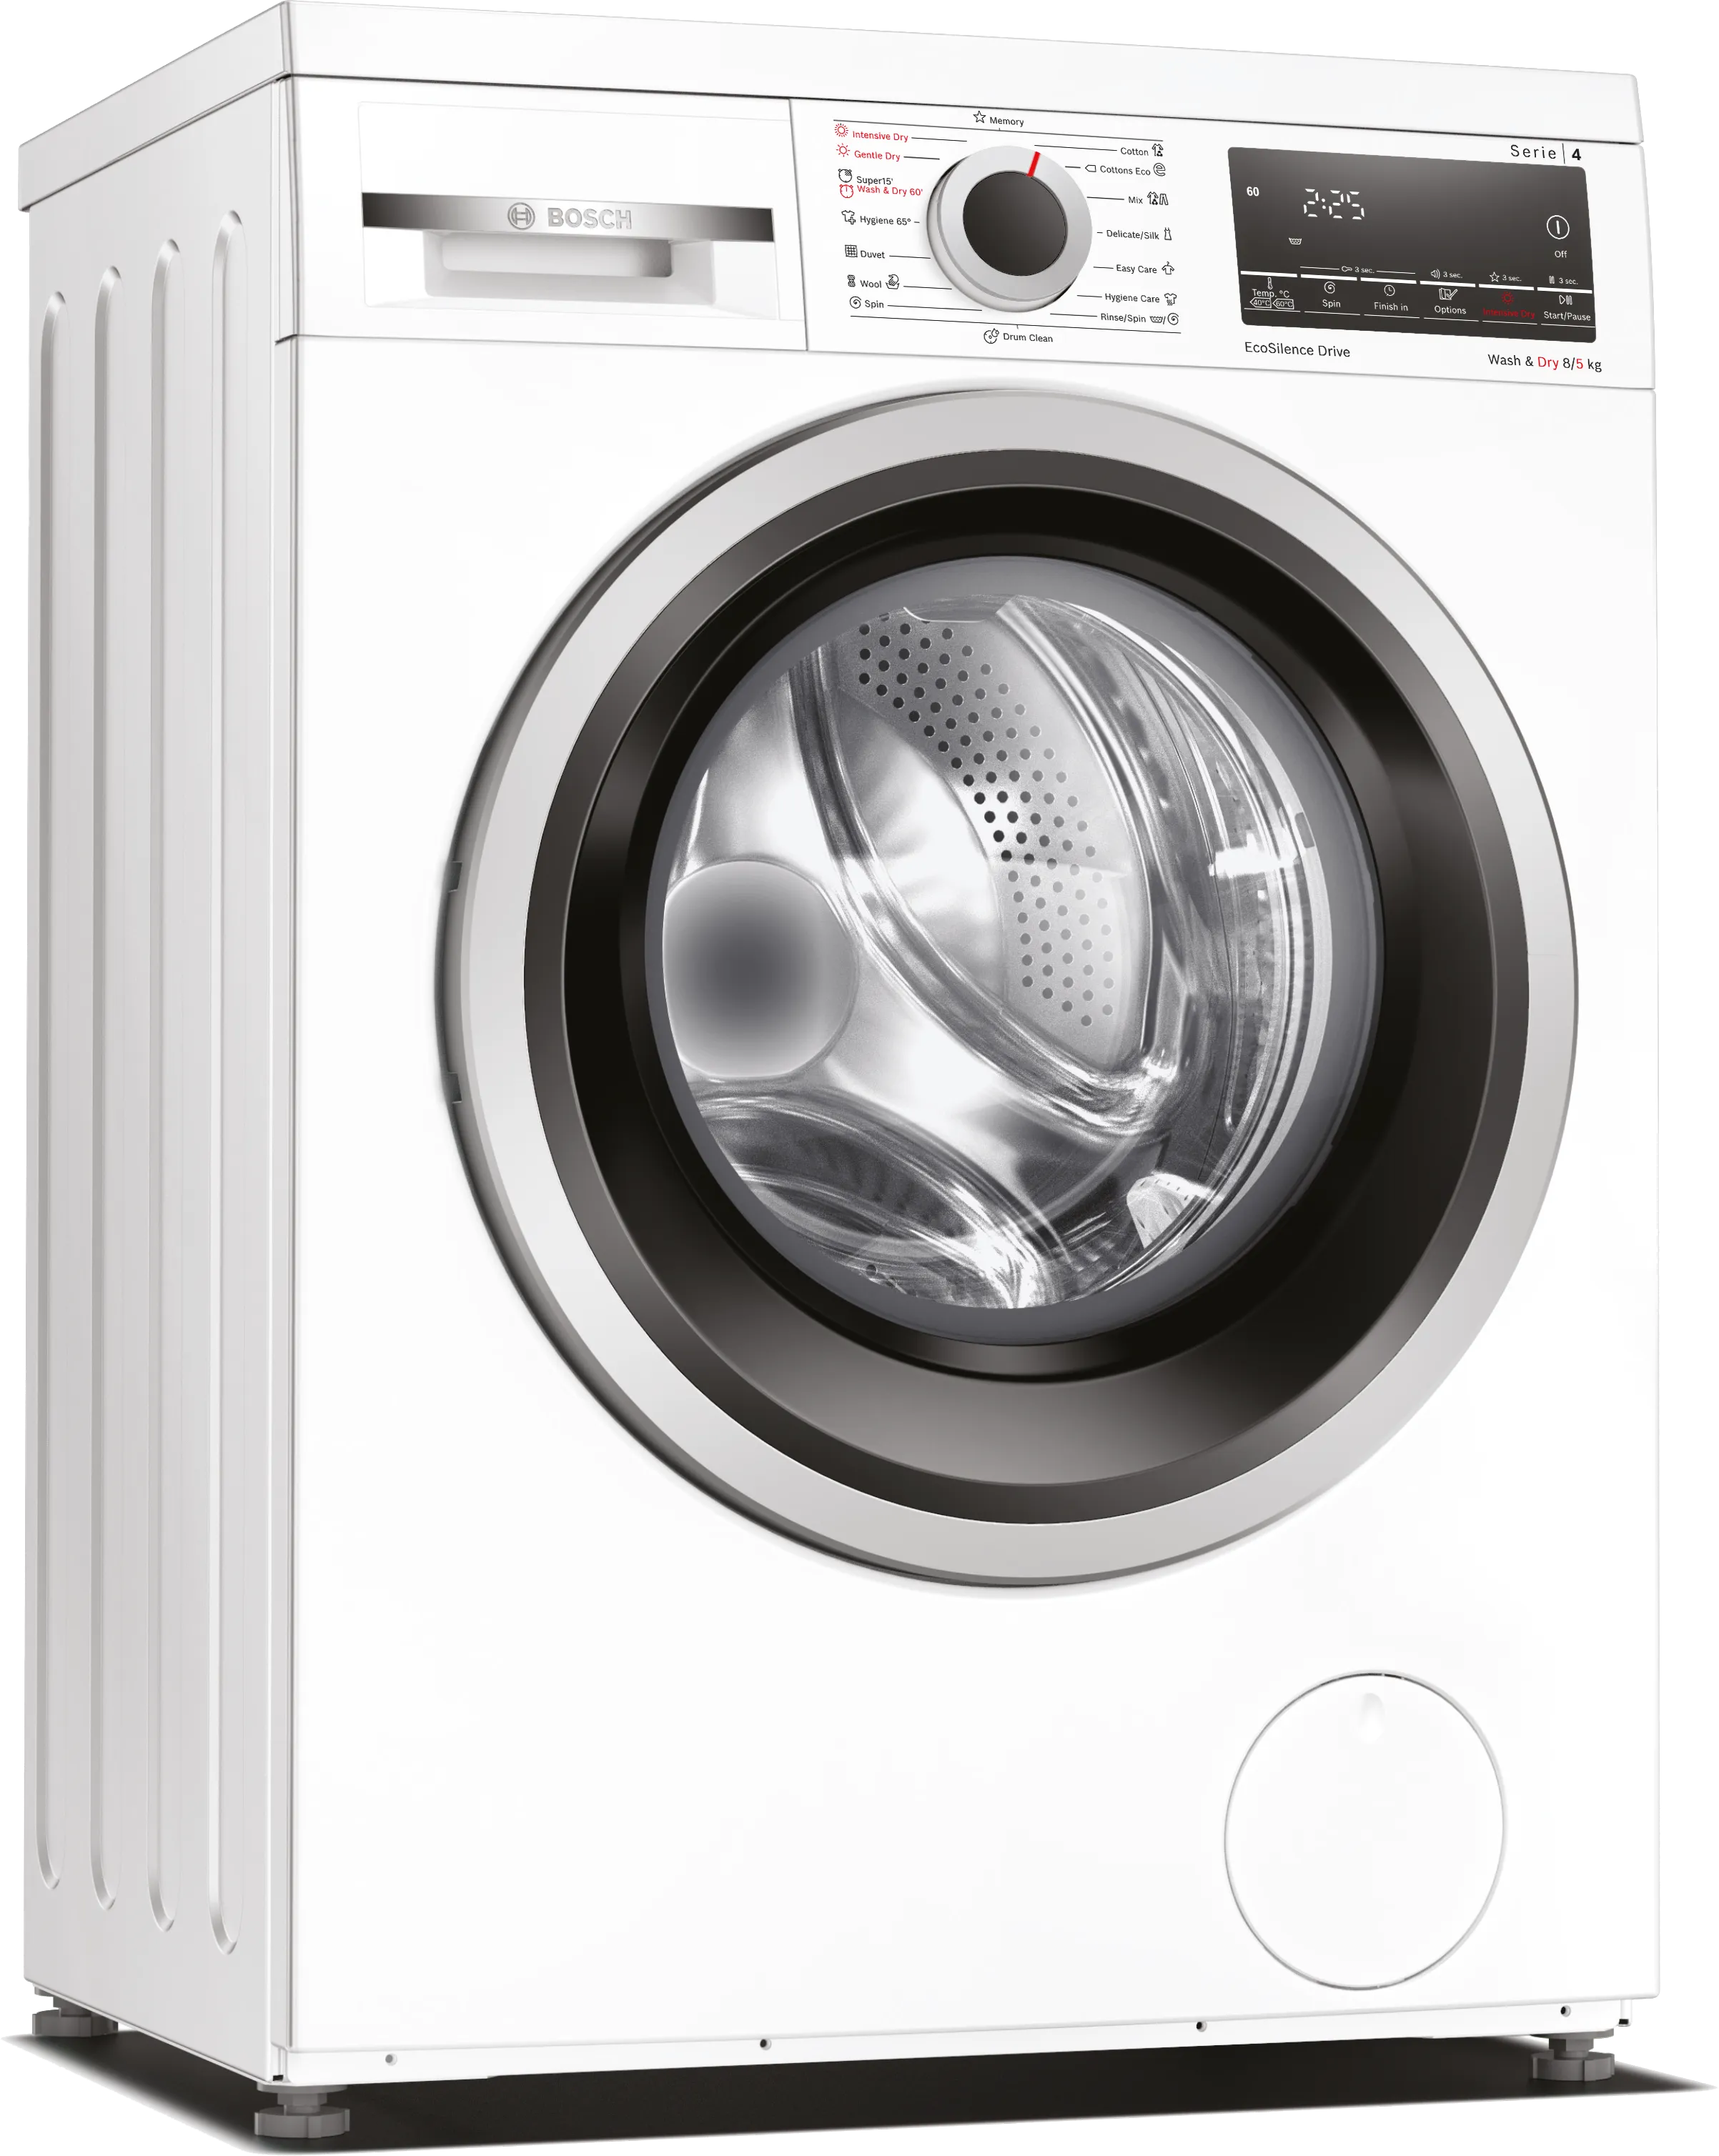 Series 4 washer-dryer 8/5 kg 1400 rpm 